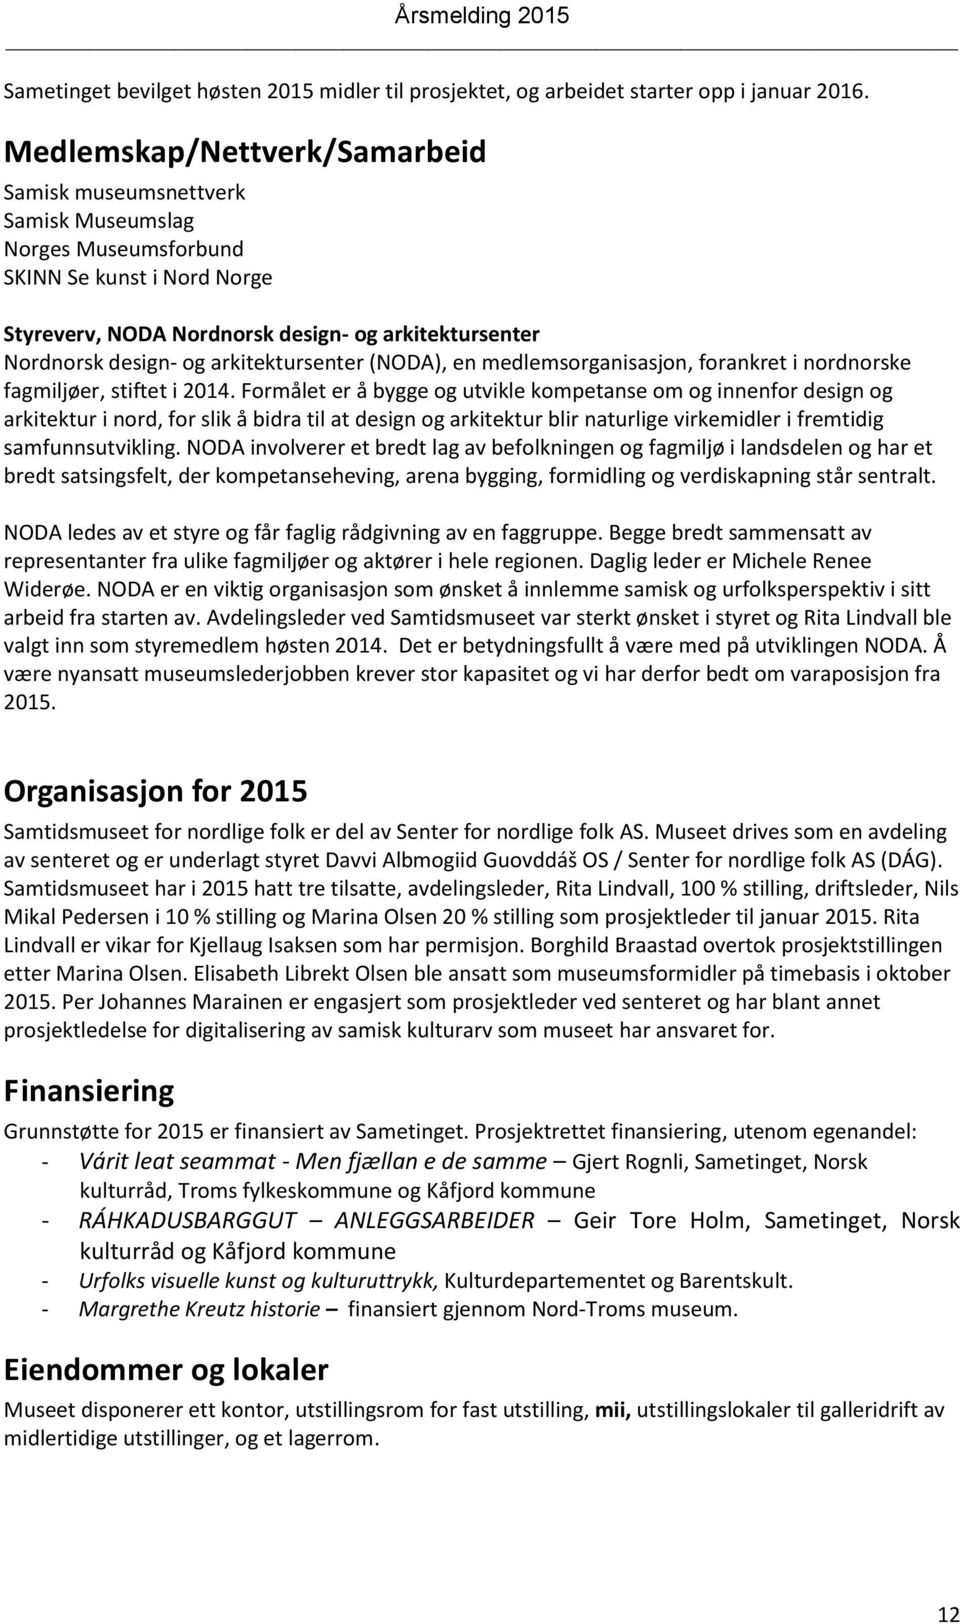 arkitektursenter (NODA), en medlemsorganisasjon, forankret i nordnorske fagmiljøer, stiftet i 2014.